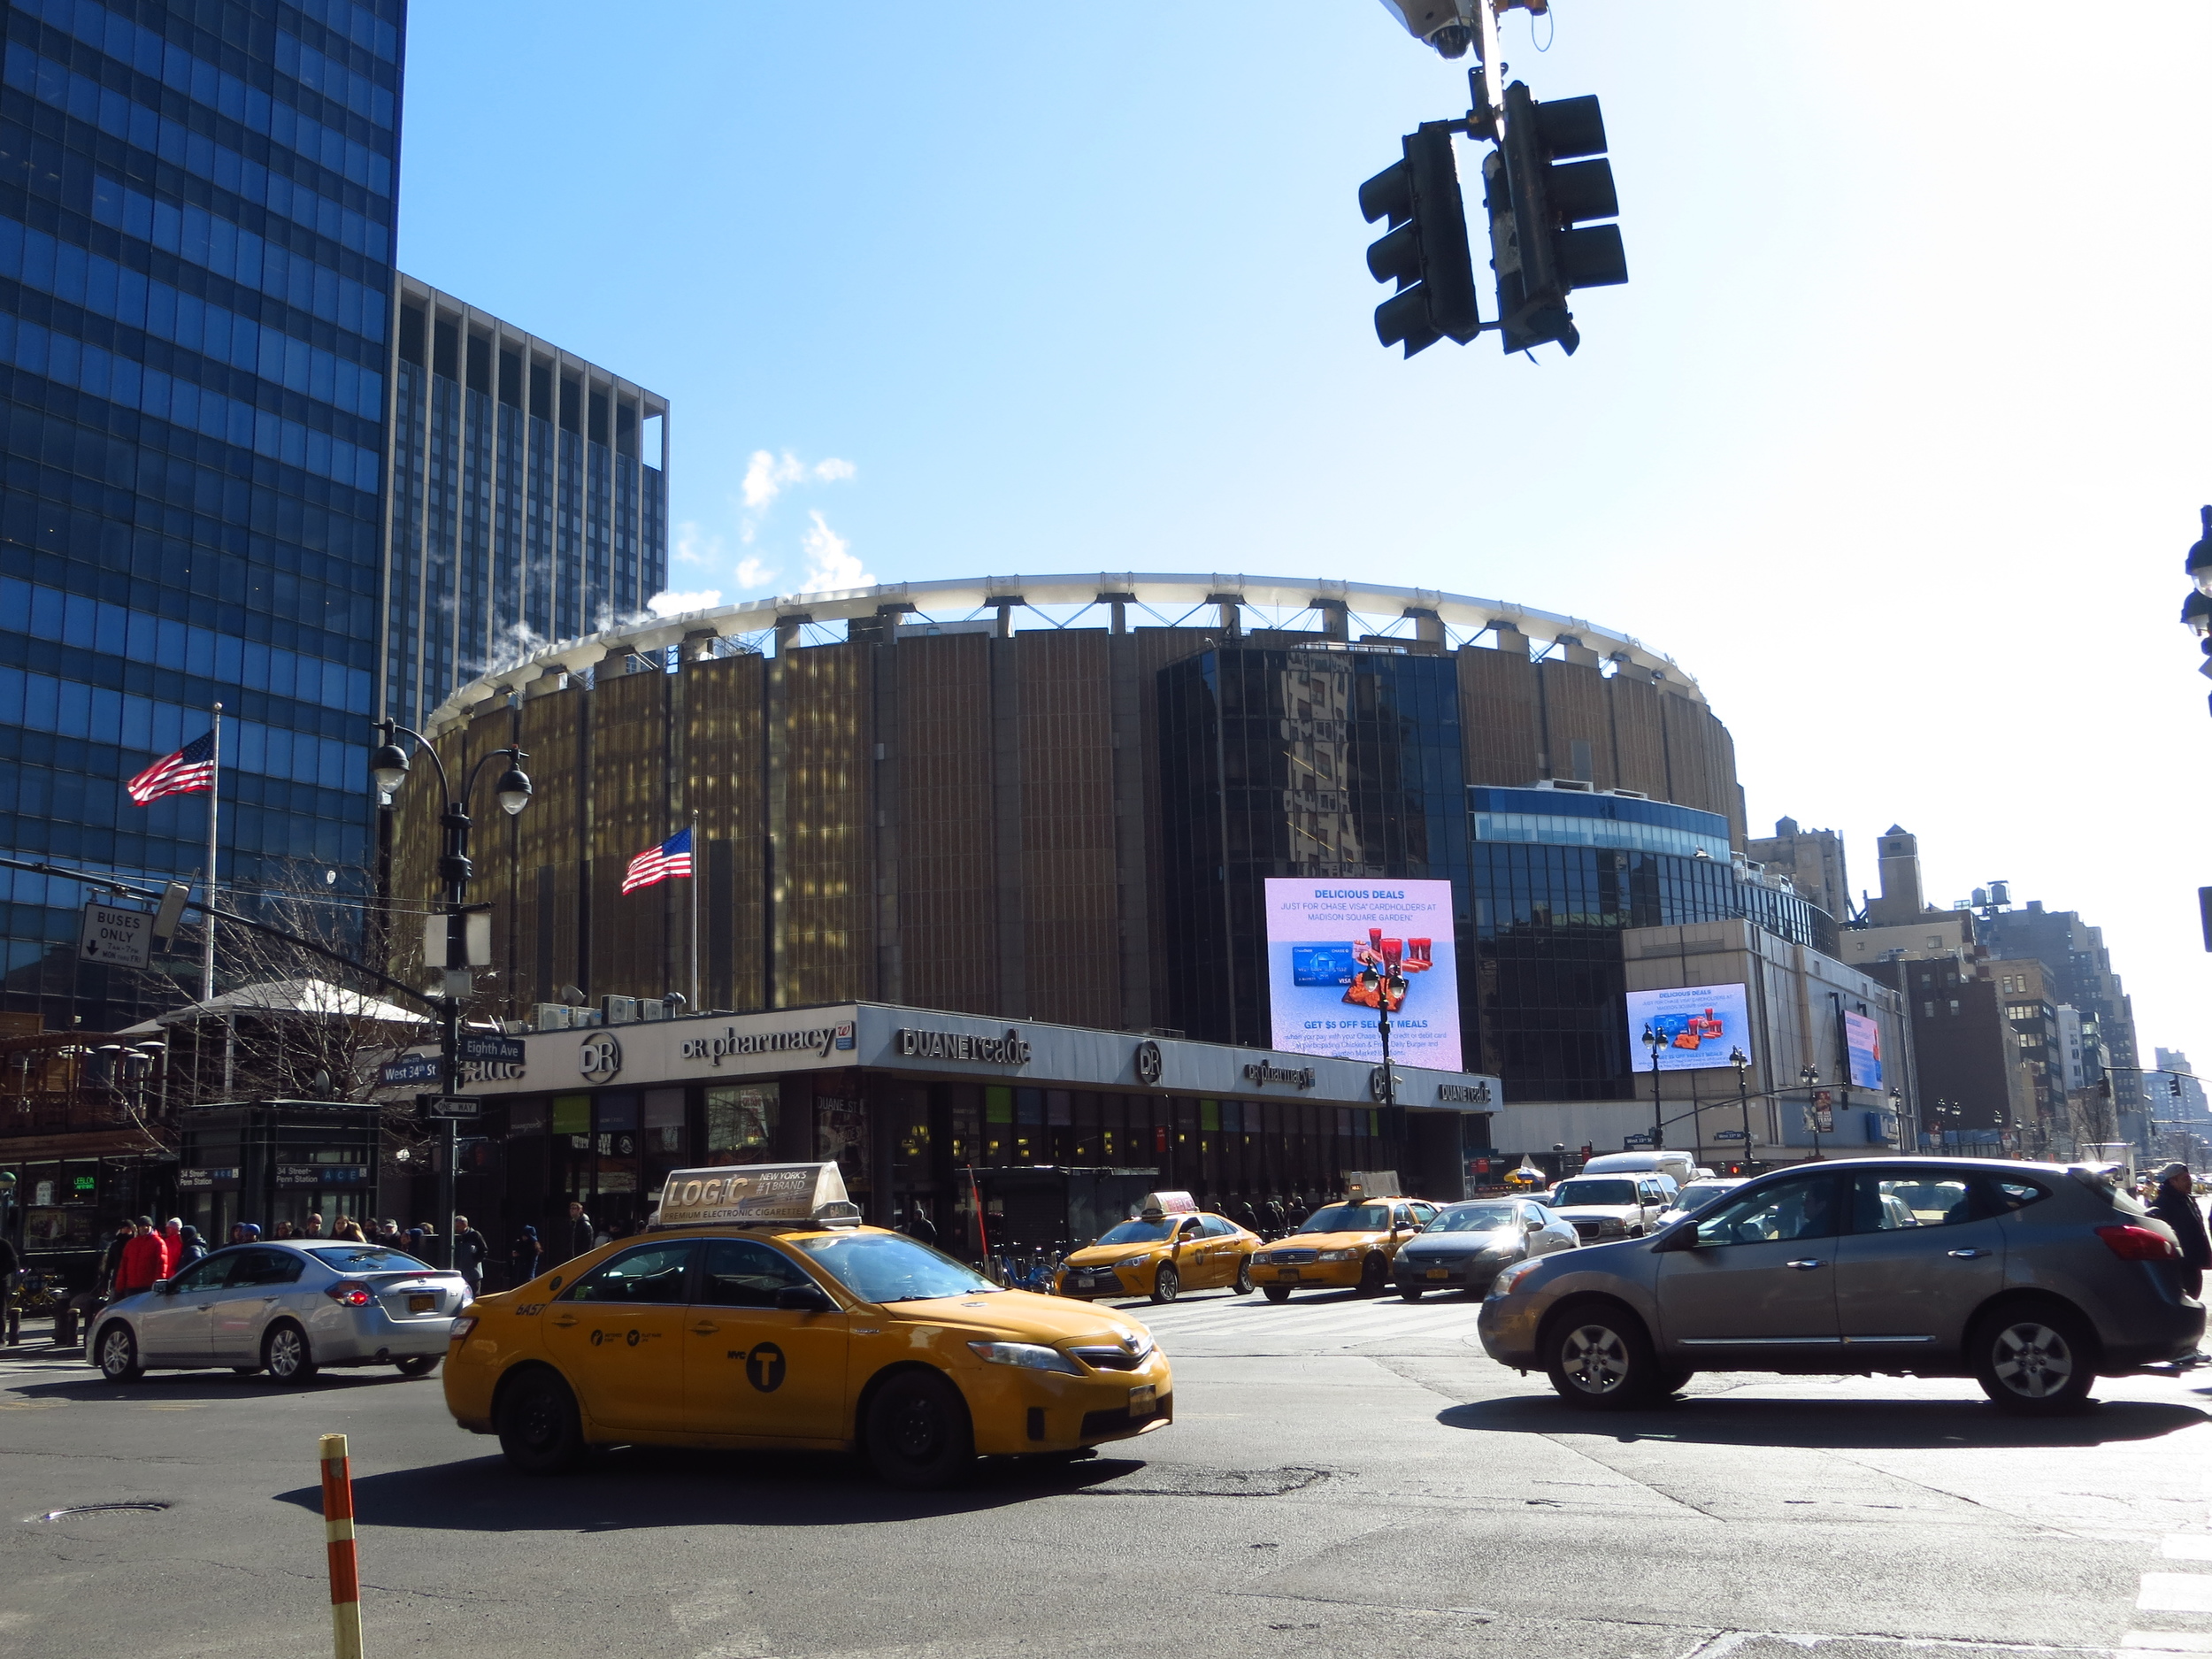 Madison Square Garden / Penn Station